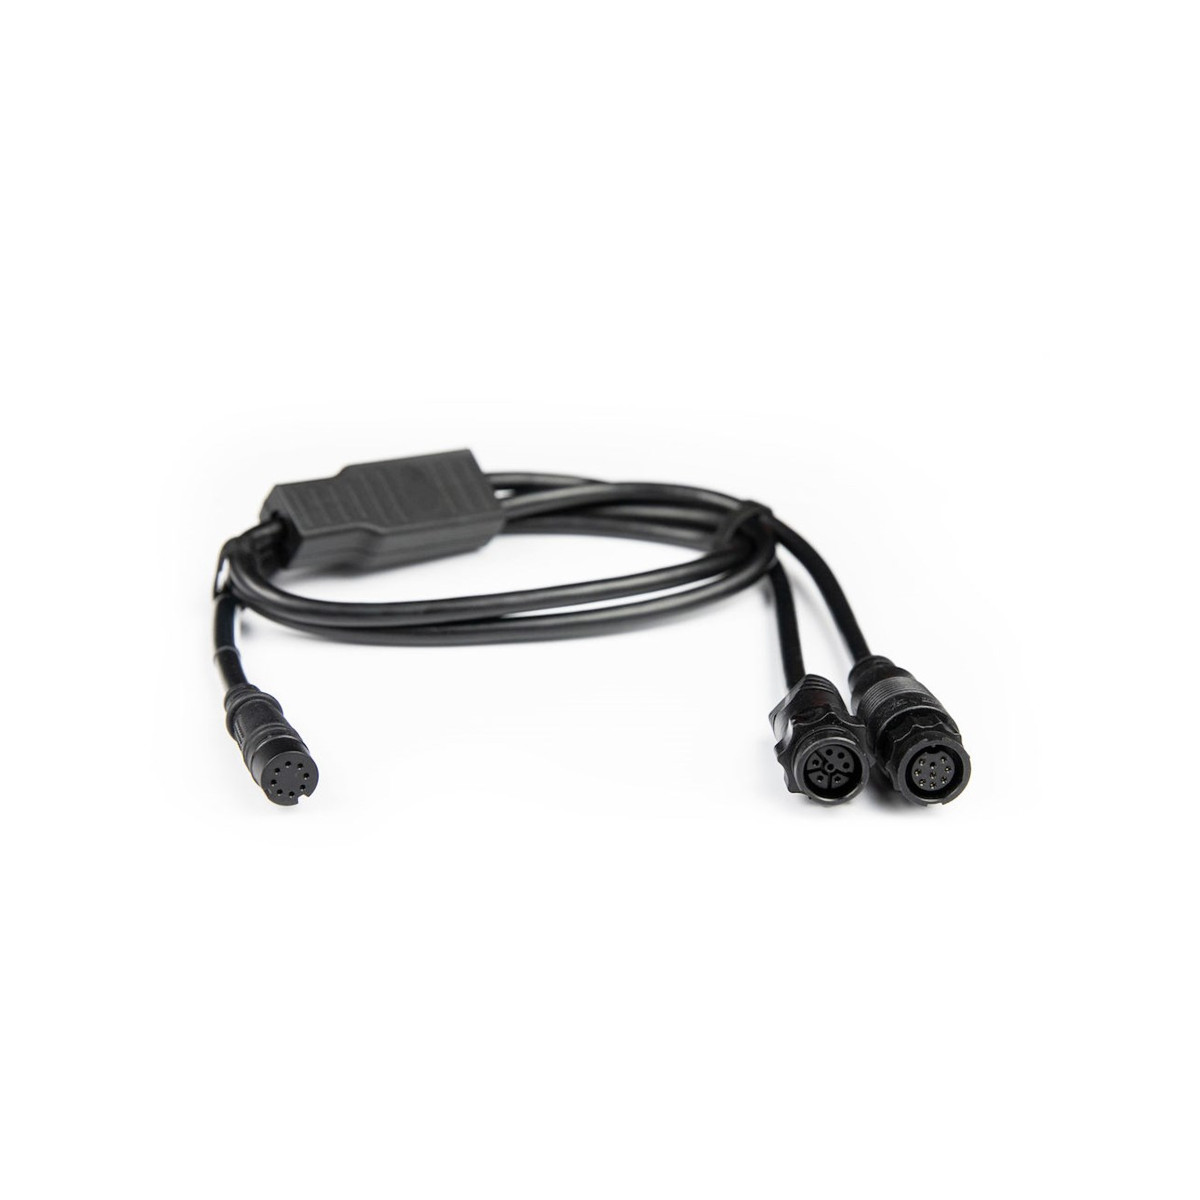 Lowrance Y-kabel voor HOOK² en Reveal transducers